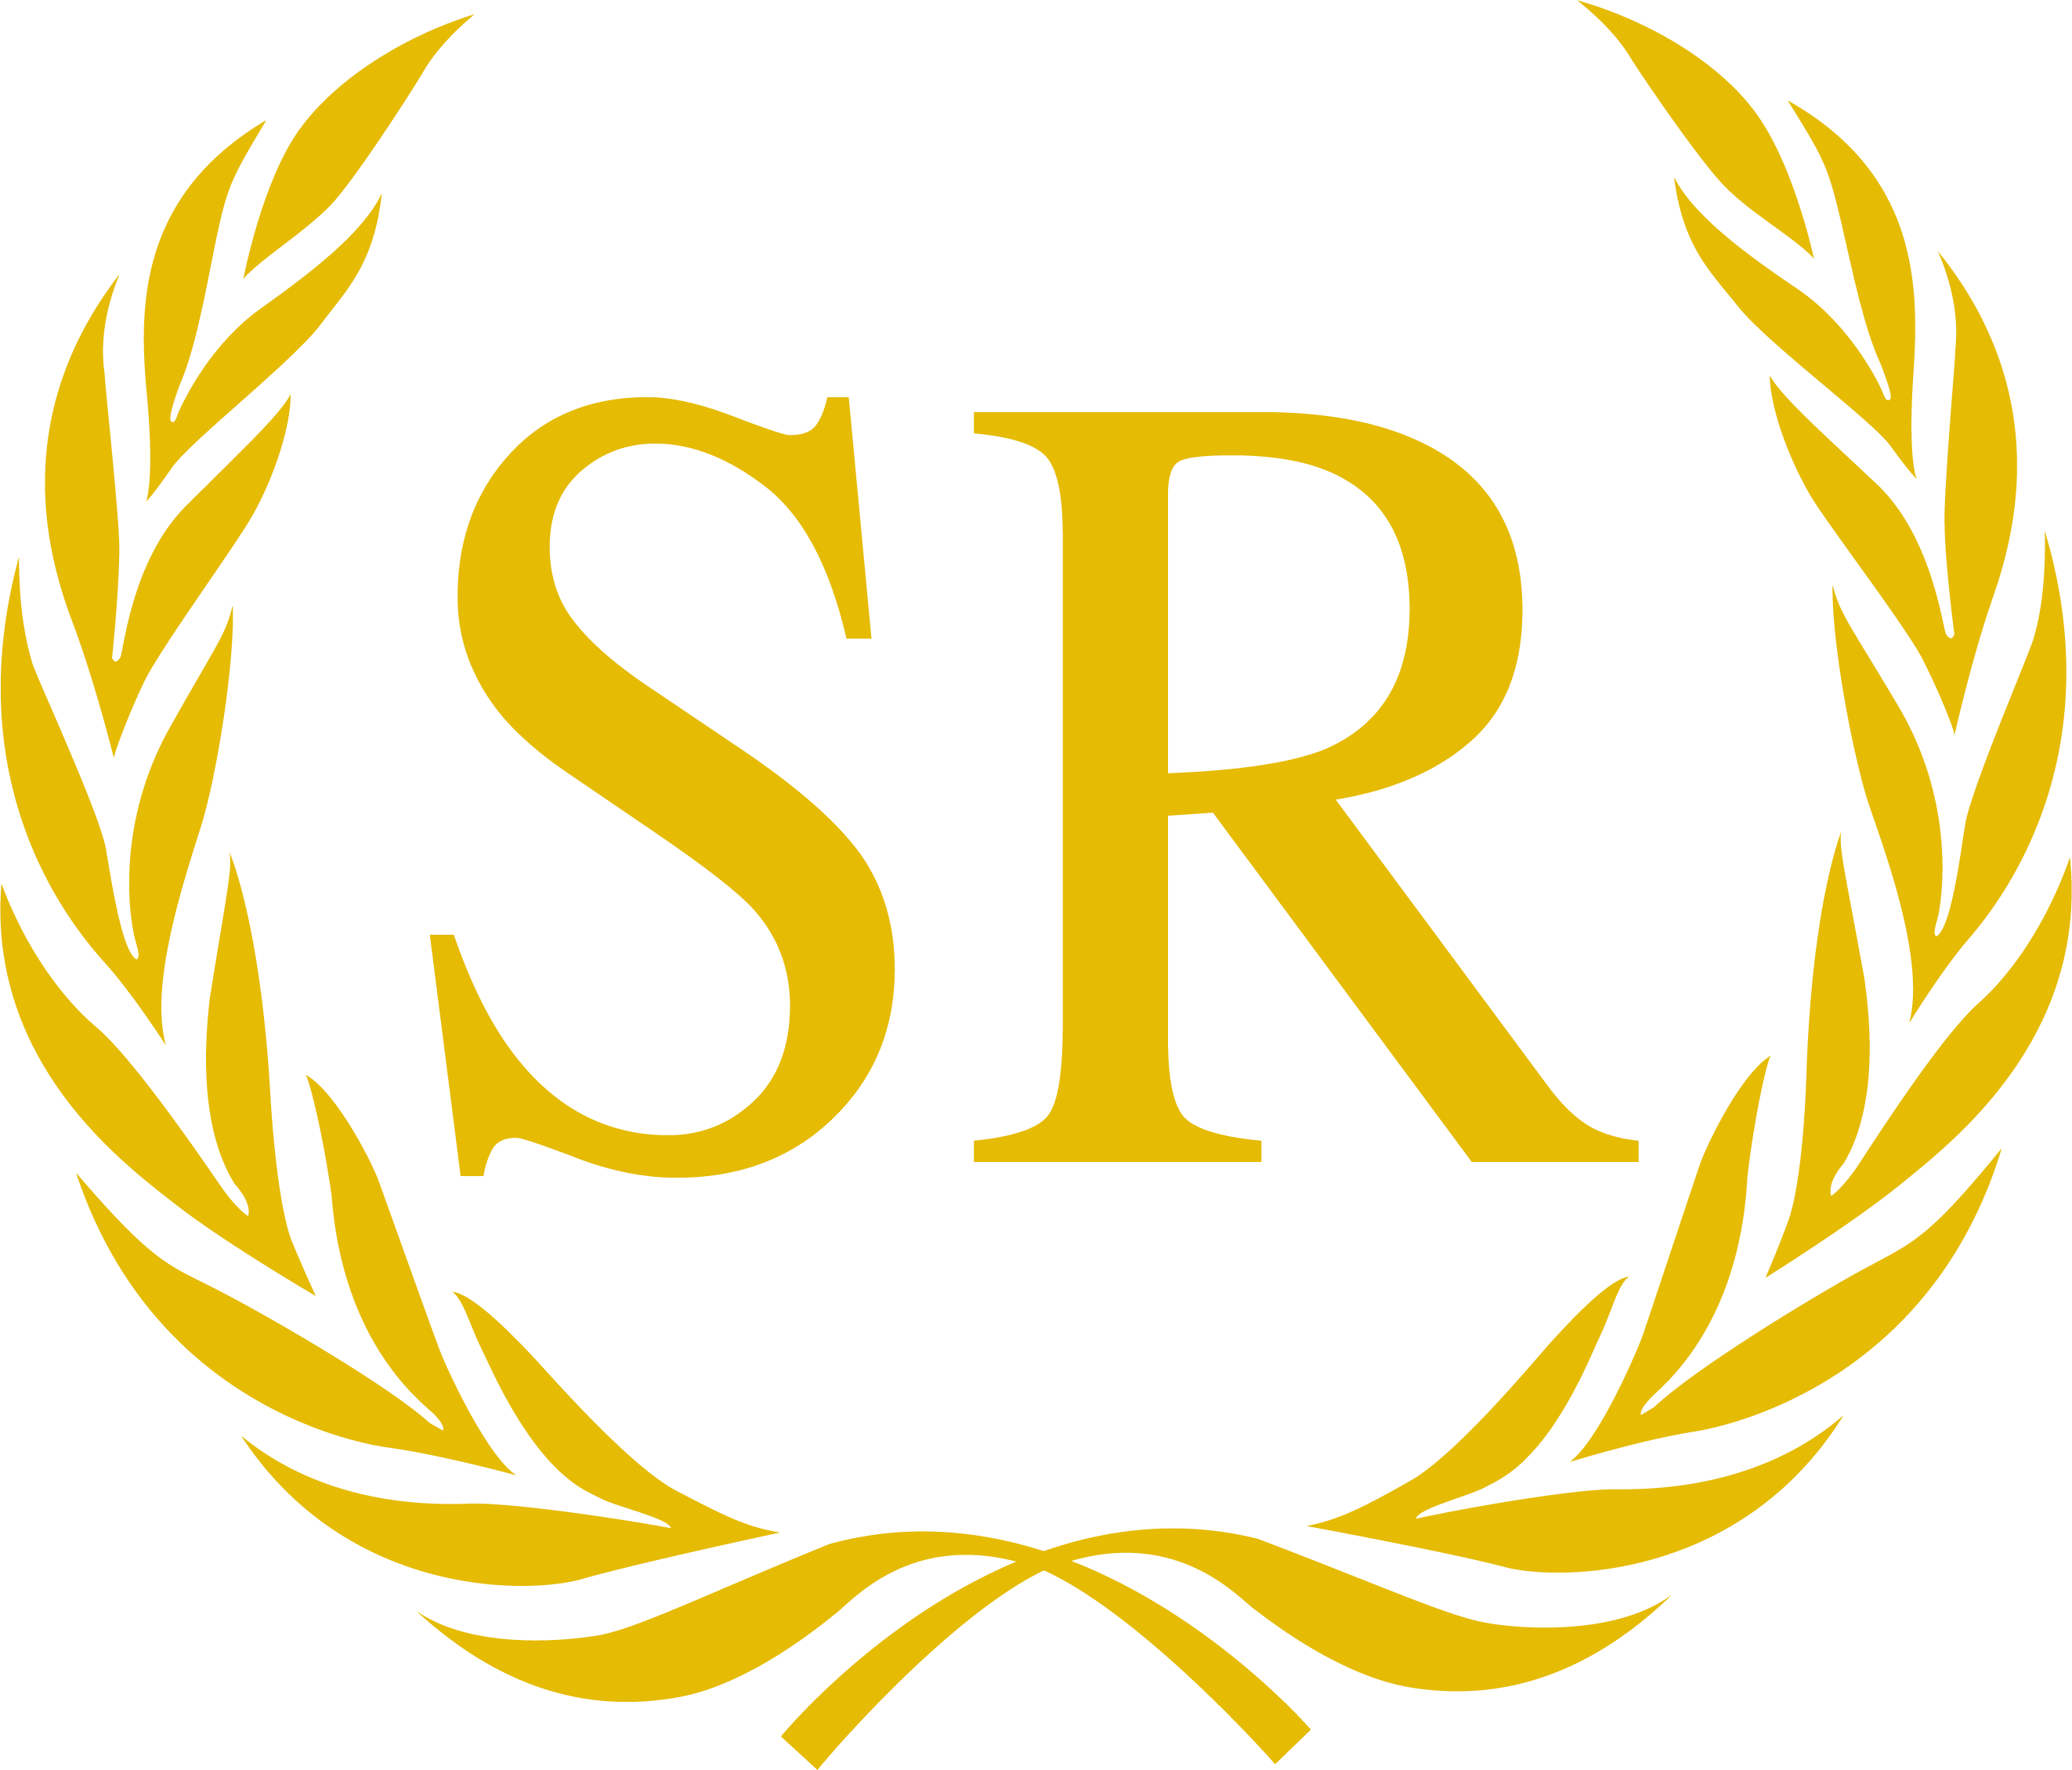 2018, Sethrosario - Com - United Nations (2645x2259), Png Download